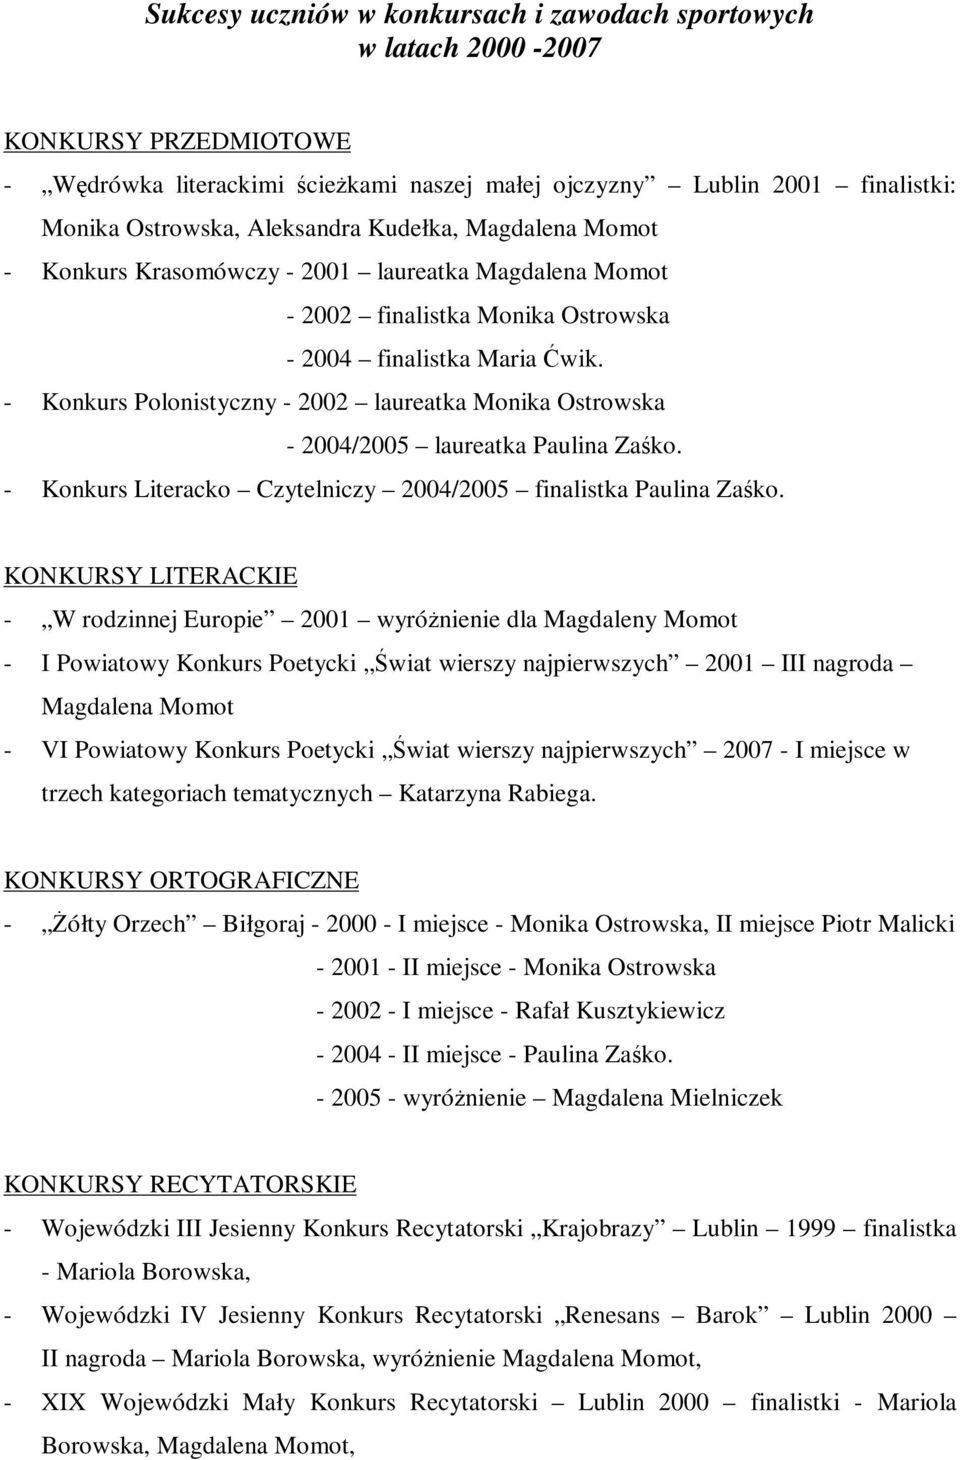 - Konkurs Polonistyczny - 2002 laureatka Monika Ostrowska - 2004/2005 laureatka Paulina Zaśko. - Konkurs Literacko Czytelniczy 2004/2005 finalistka Paulina Zaśko.